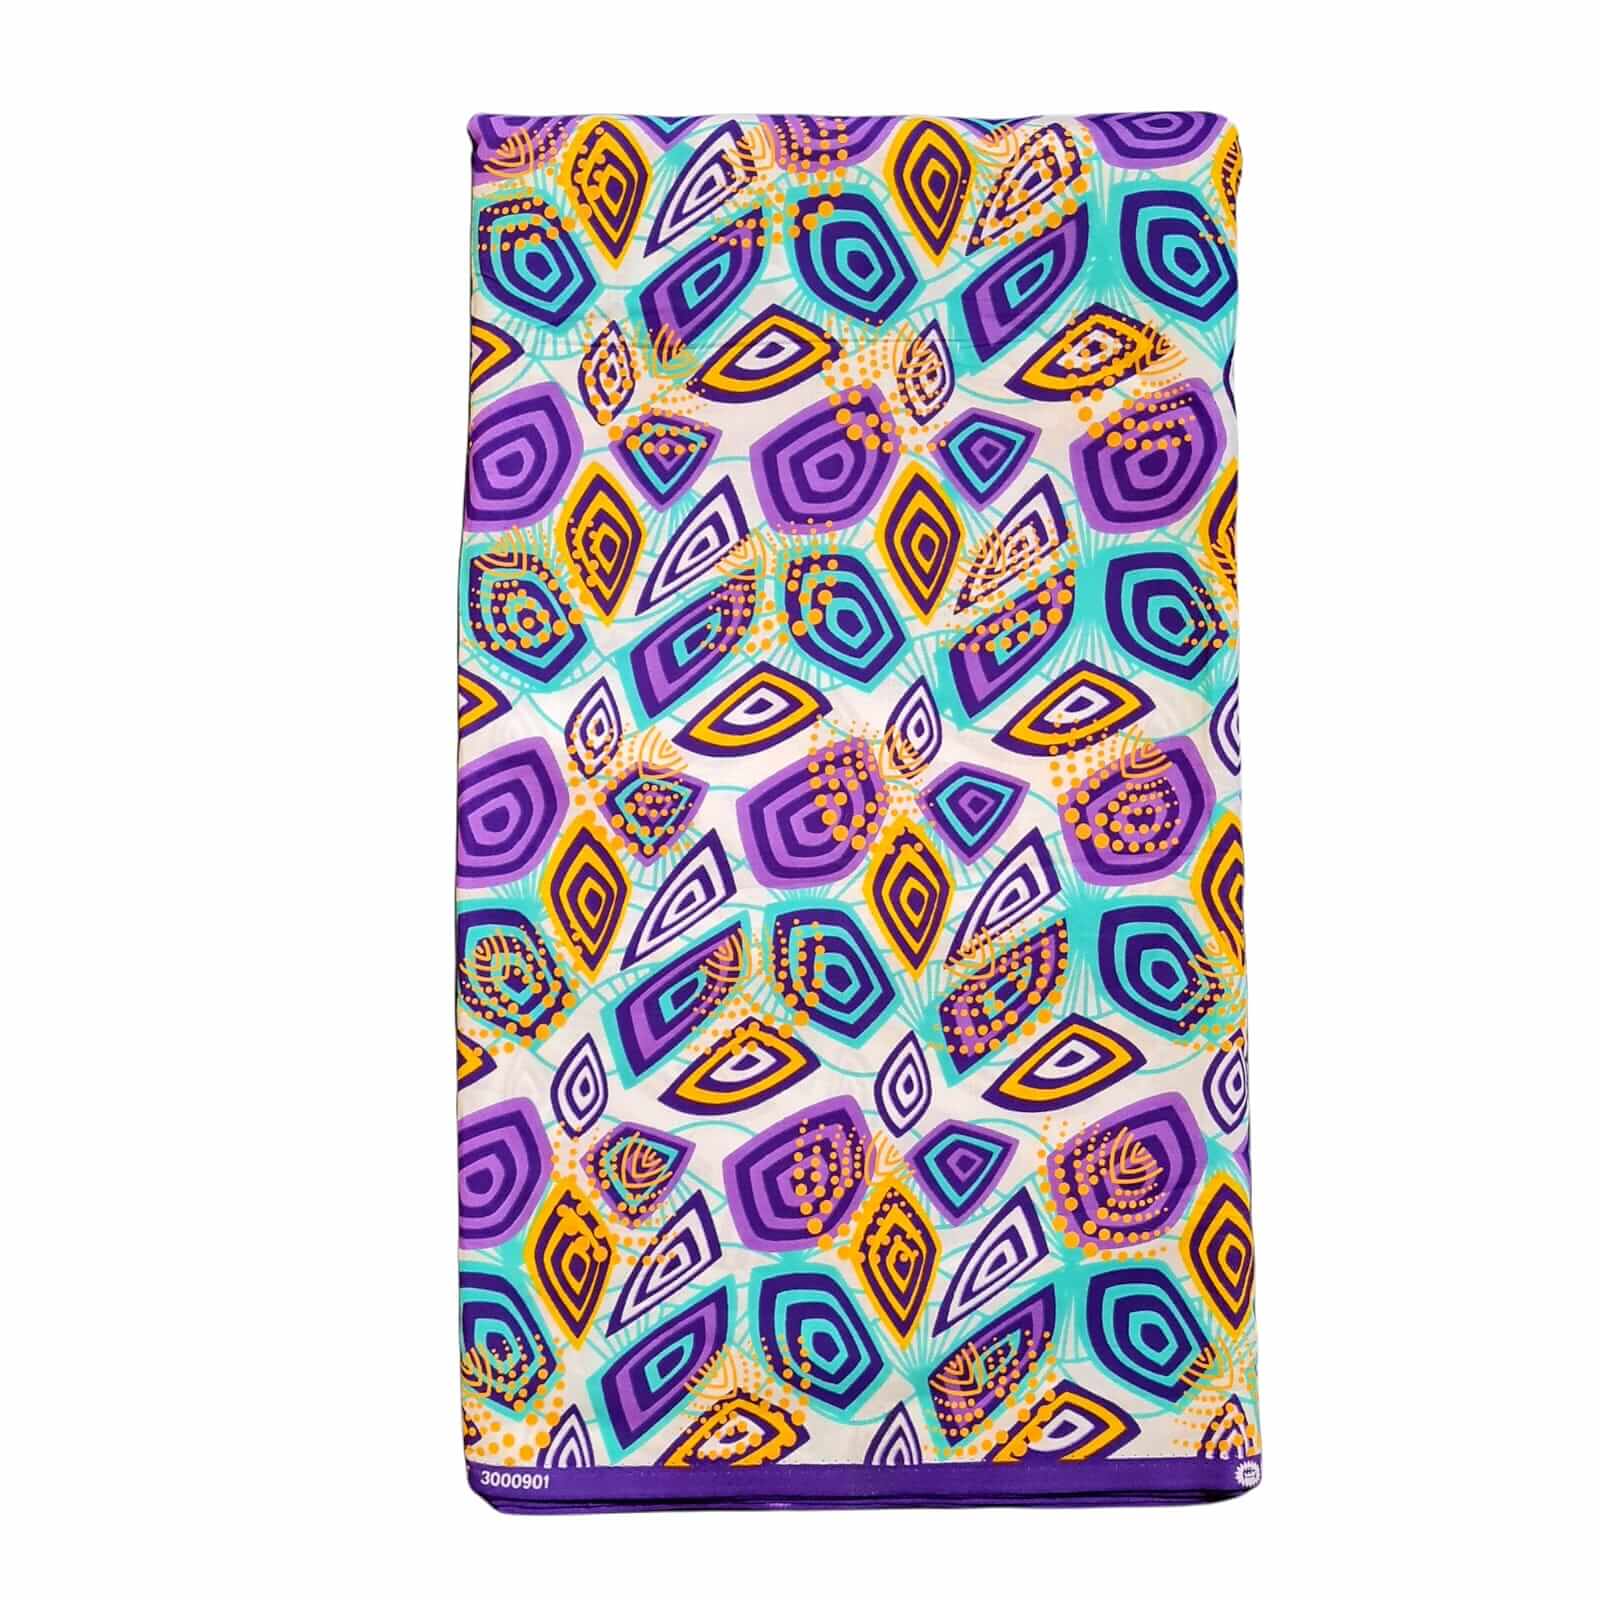 Tissu - Wax 100% coton - Graphiques - Violet / Turquoise / Jaune